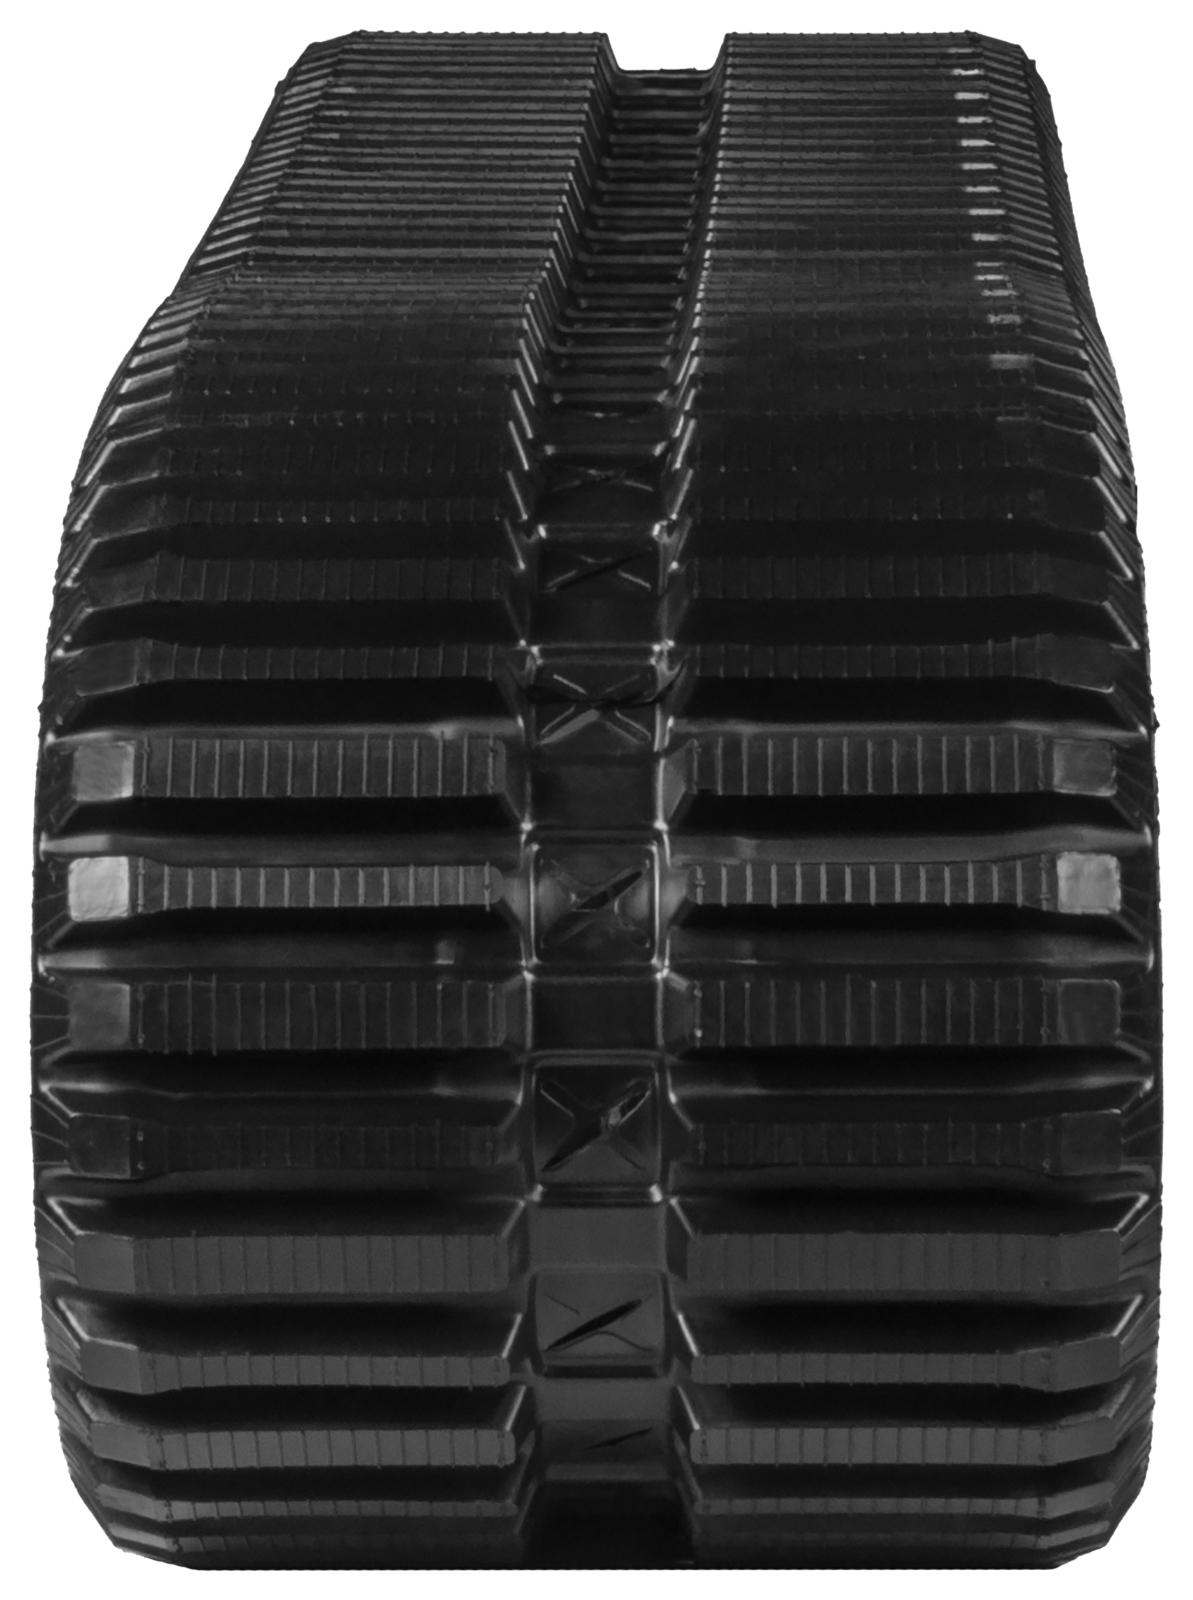 set of 2 18" heavy duty multi-bar pattern rubber track (450x86bx56)